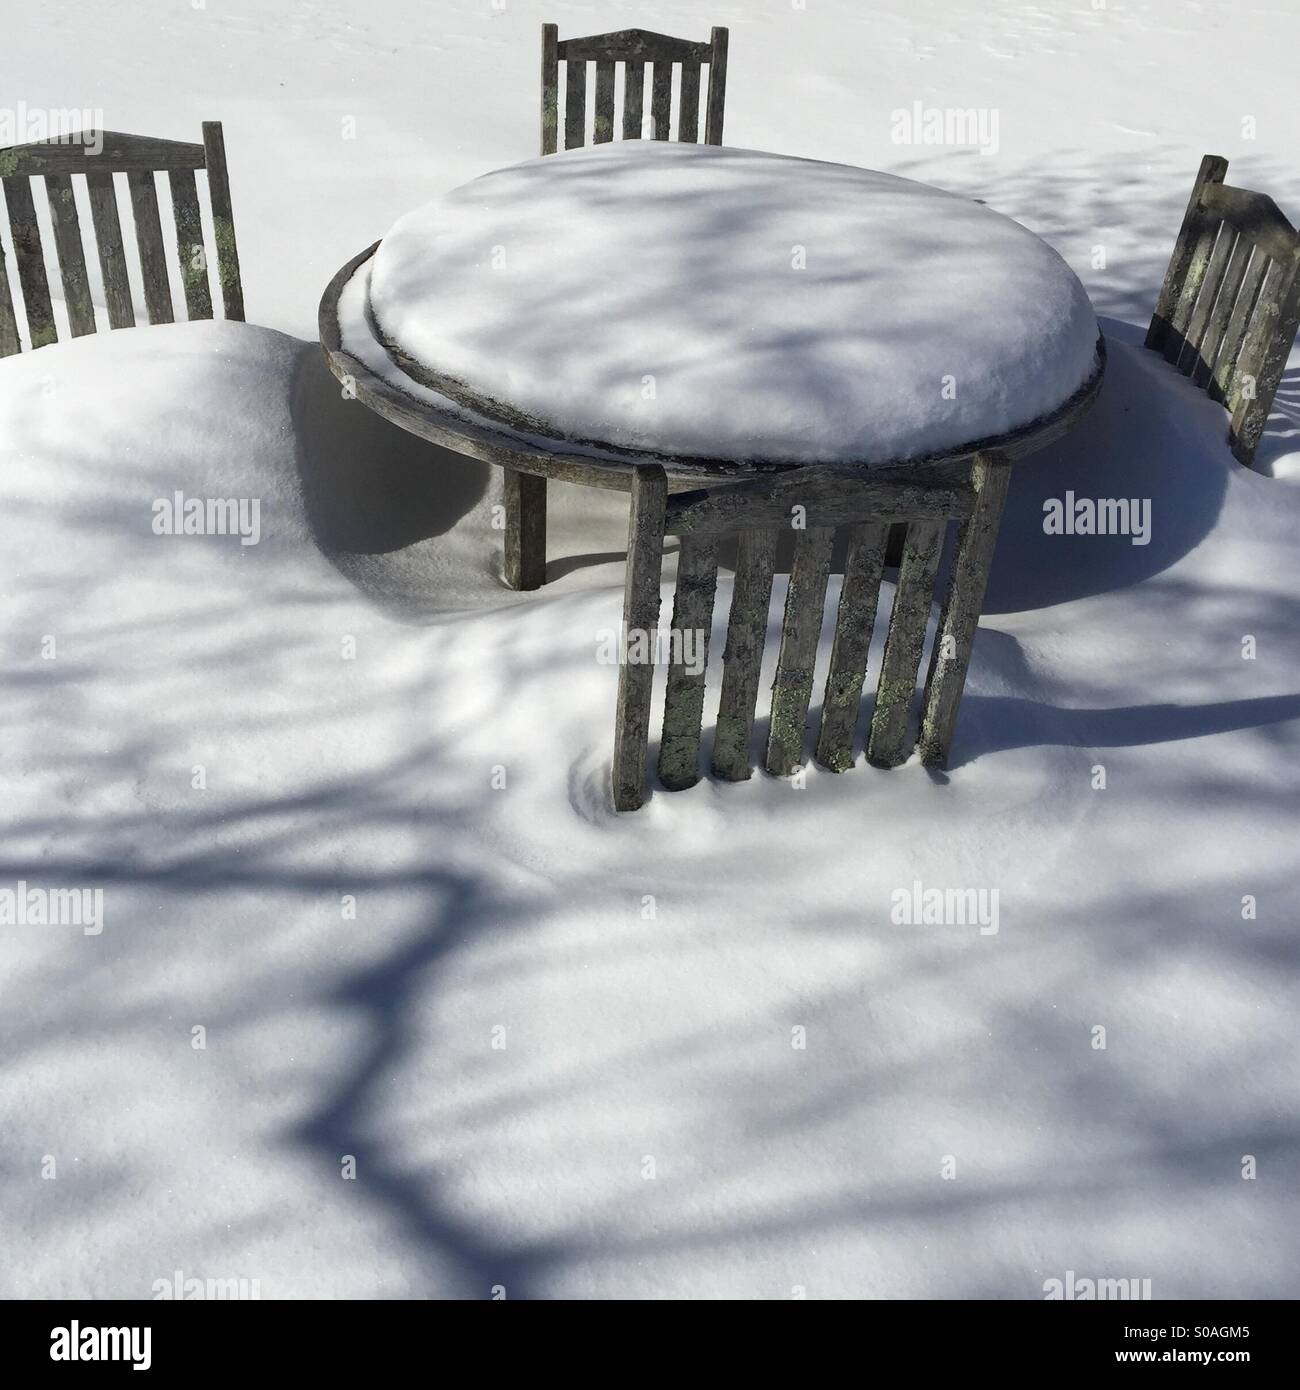 Scène d'hiver de weathered wood table et chaises en bois dans la neige profonde avec des ombres sur la neige Banque D'Images